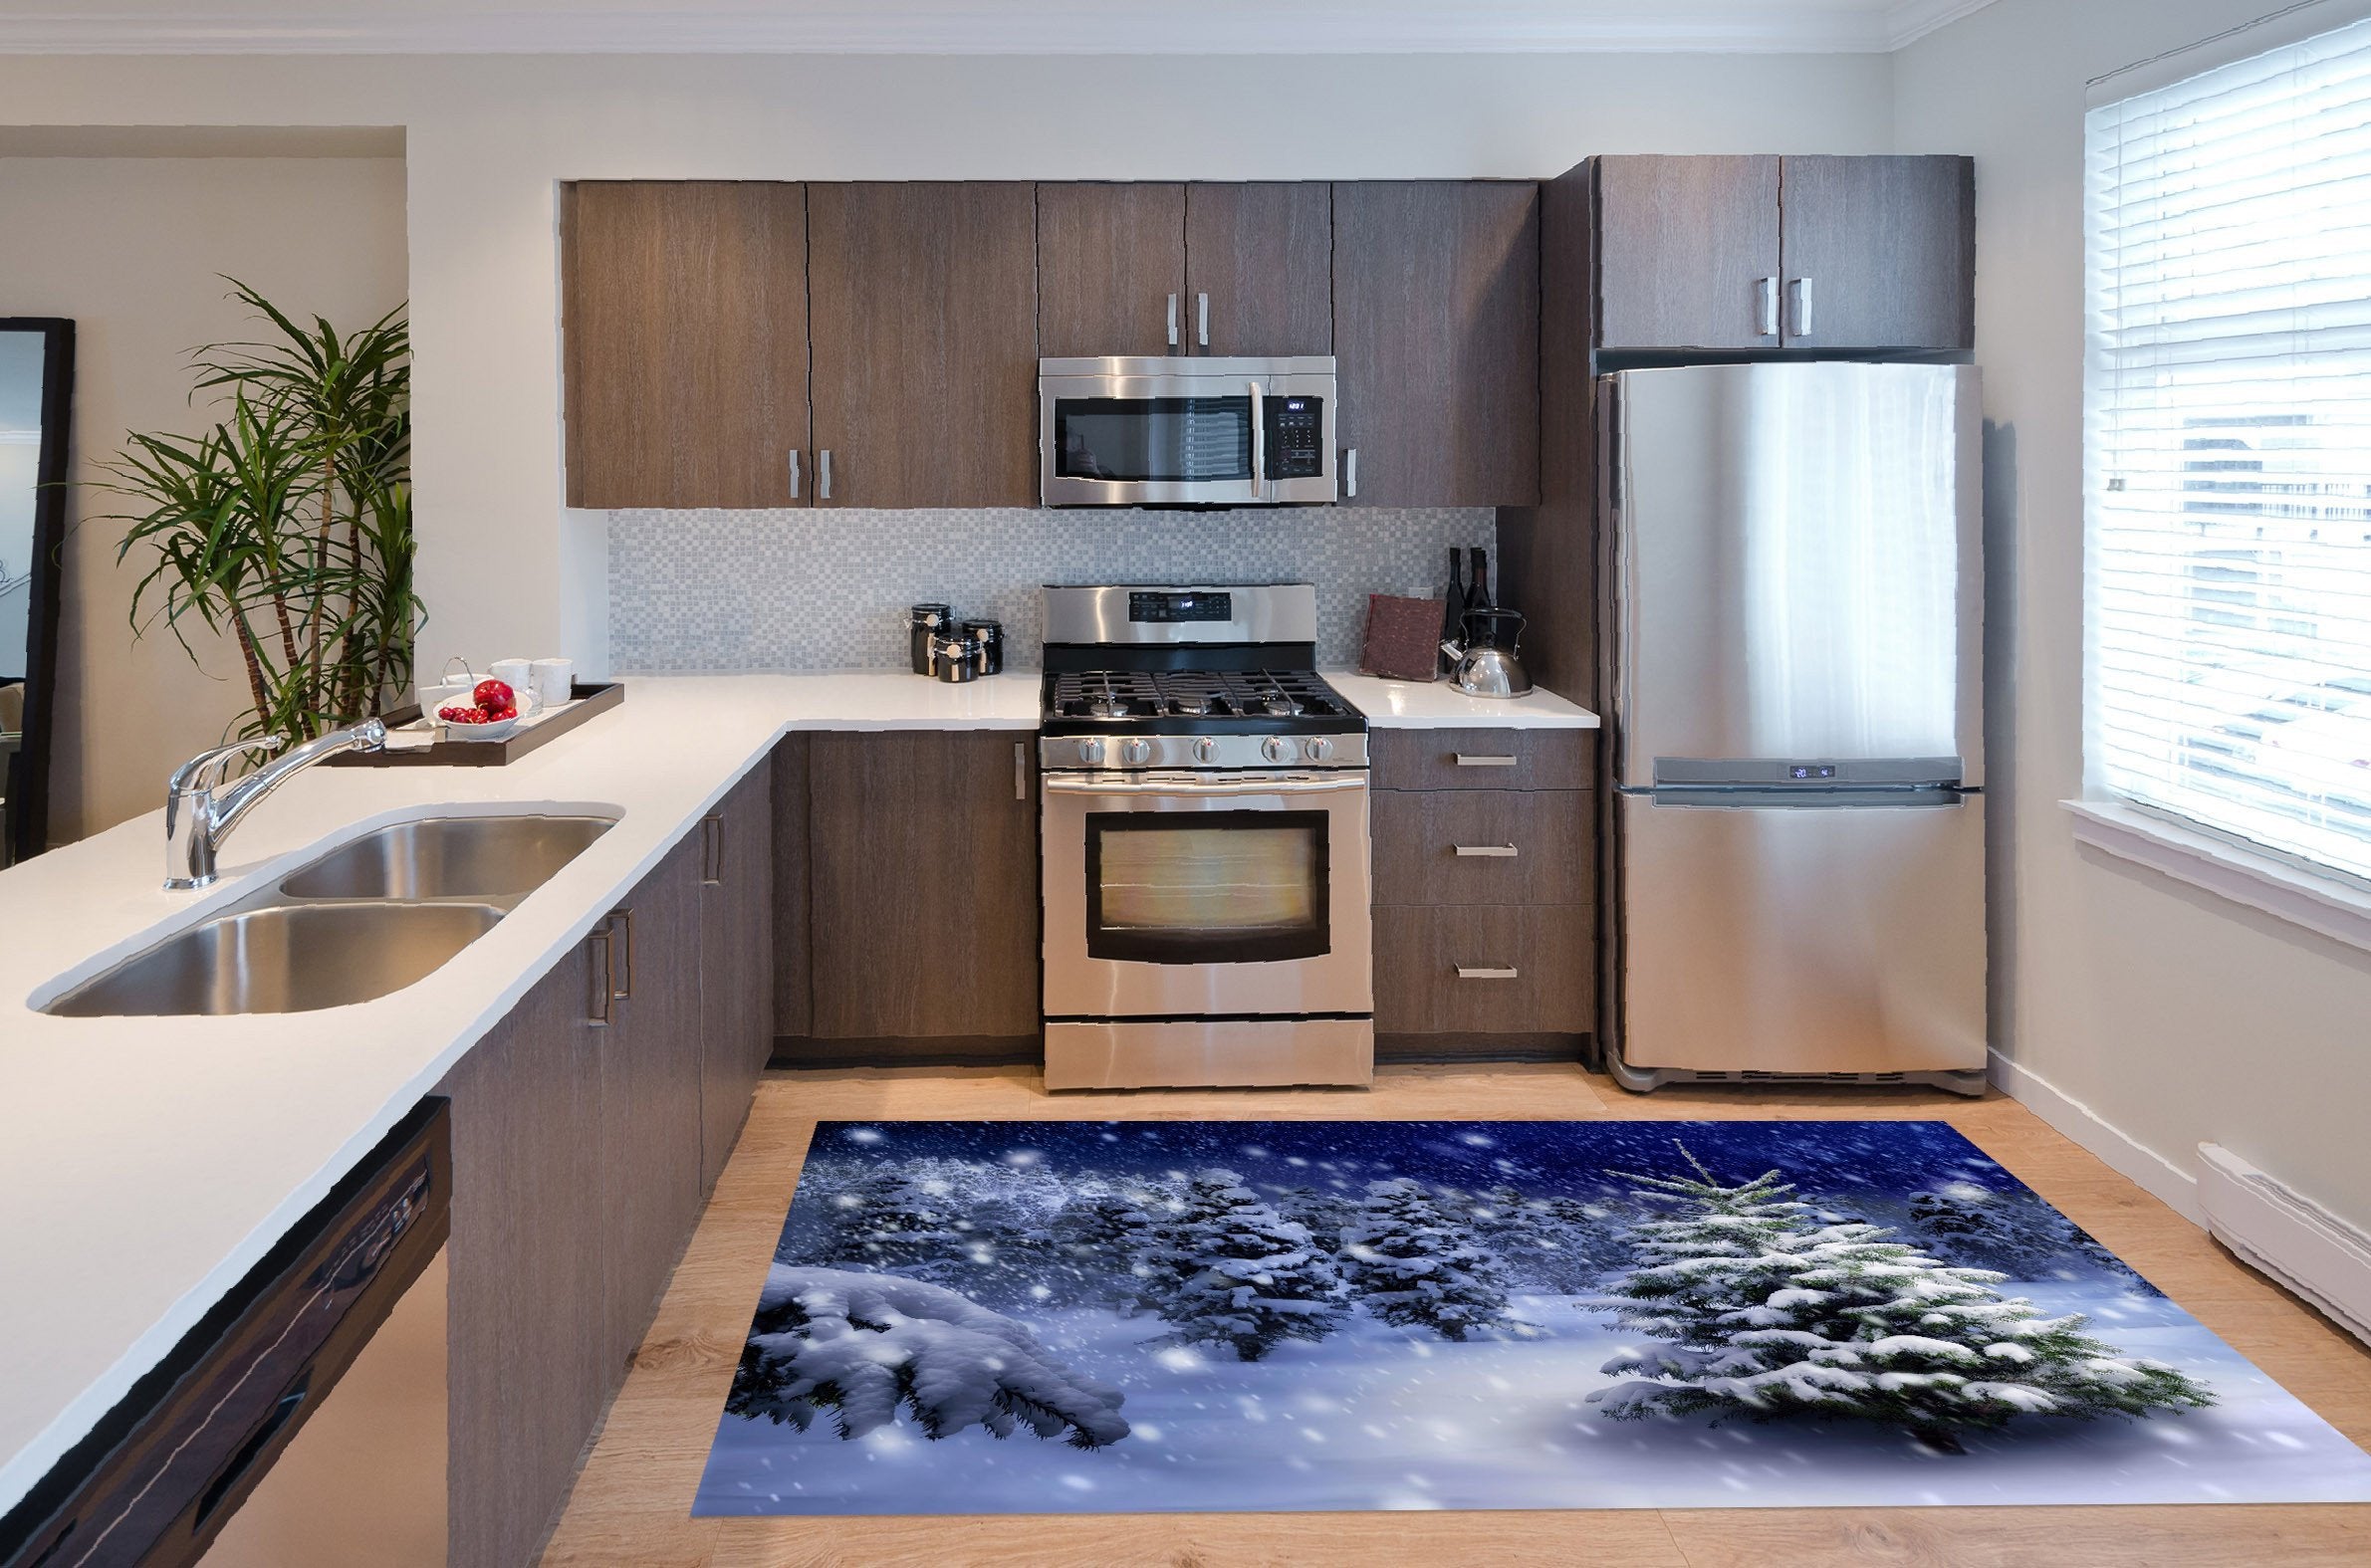 3D Snowing Forest 642 Kitchen Mat Floor Mural Wallpaper AJ Wallpaper 